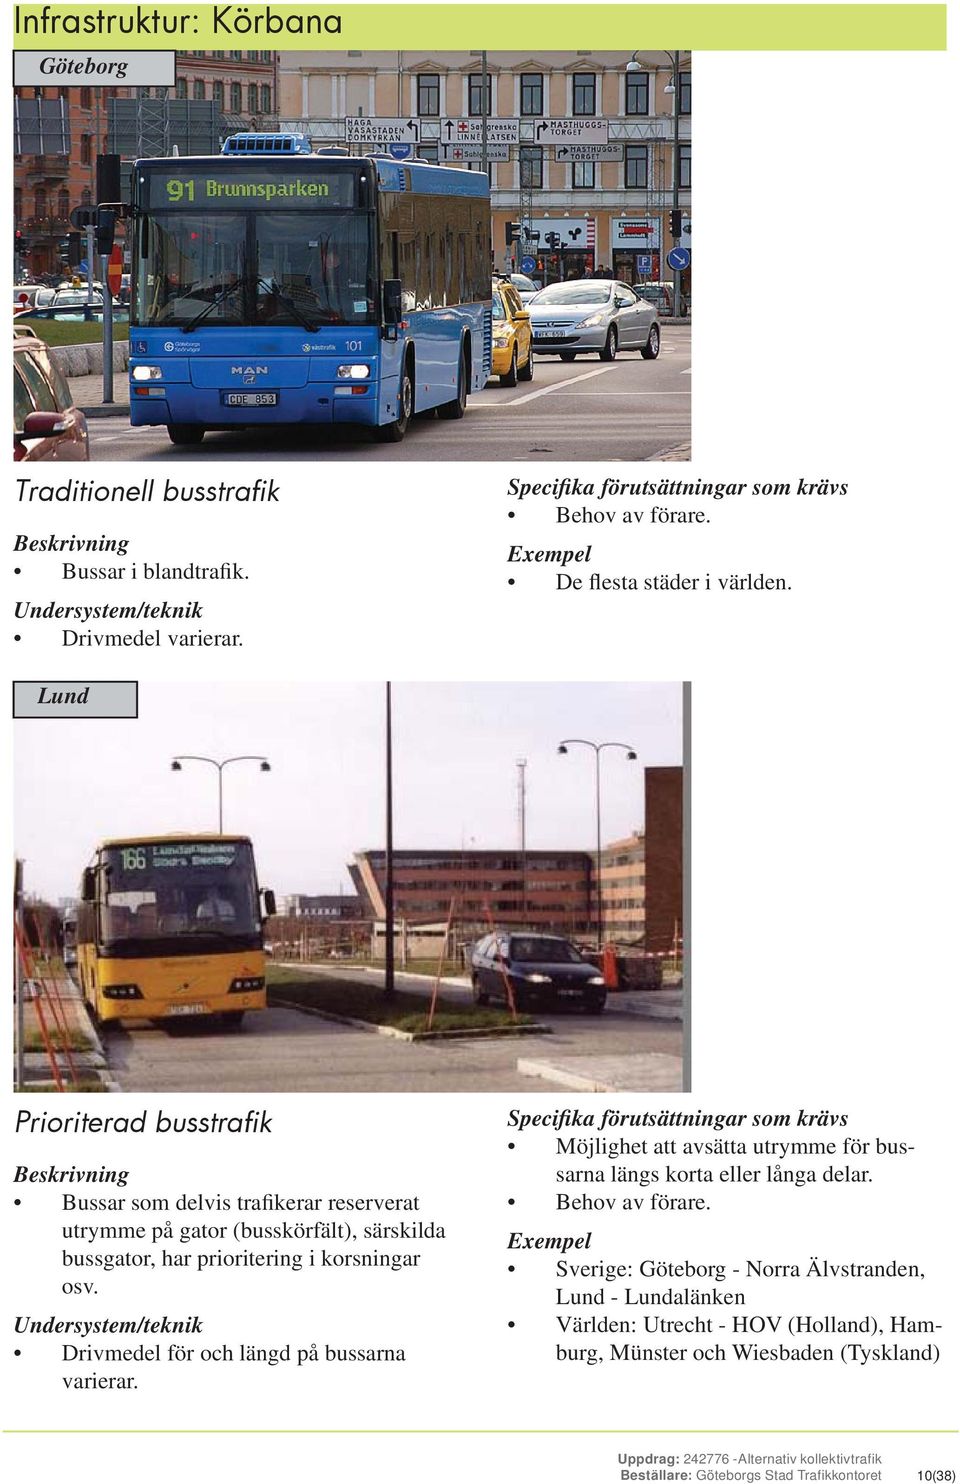 Lund Prioriterad busstrafik Beskrivning Bussar som delvis trafikerar reserverat utrymme på gator (busskörfält), särskilda bussgator, har prioritering i korsningar osv.